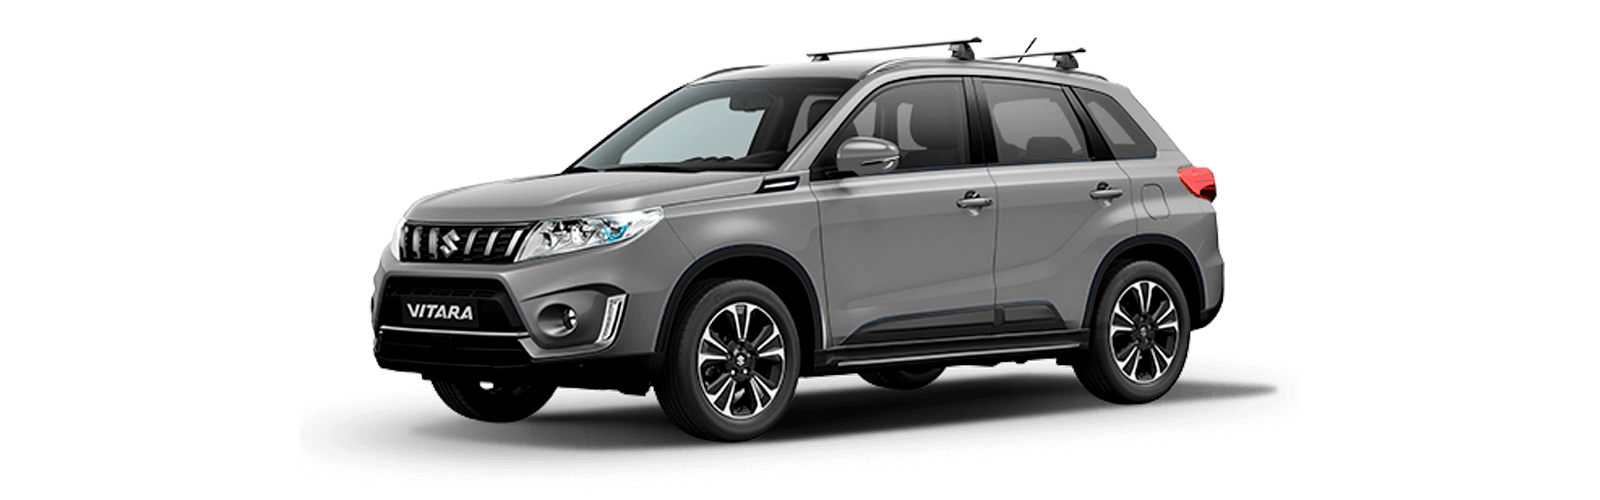 Test en carretera y análisis del nuevo Suzuki Vitara 2023, un